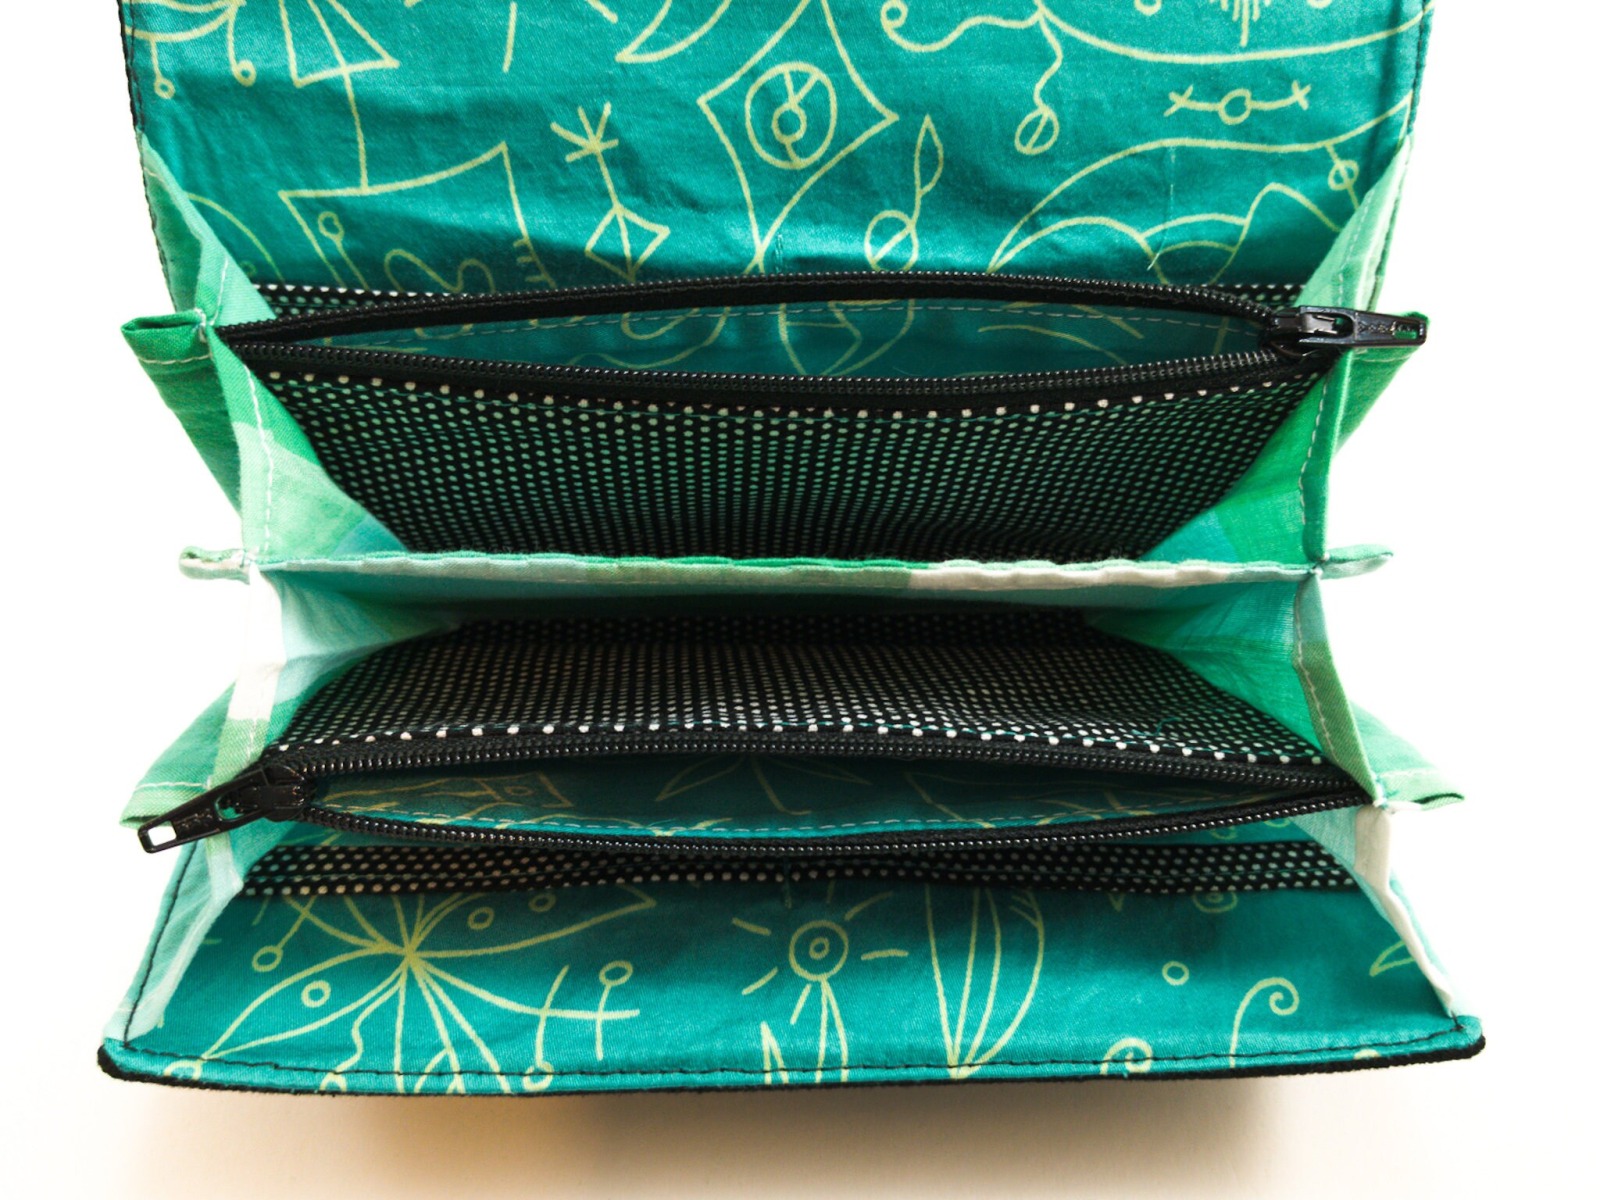 Upcycling-Portemonnaie | 19 cm/ 7,5 breit | Jeans | schwarz | Wachstuch mit Hirschmotiv | türkis |